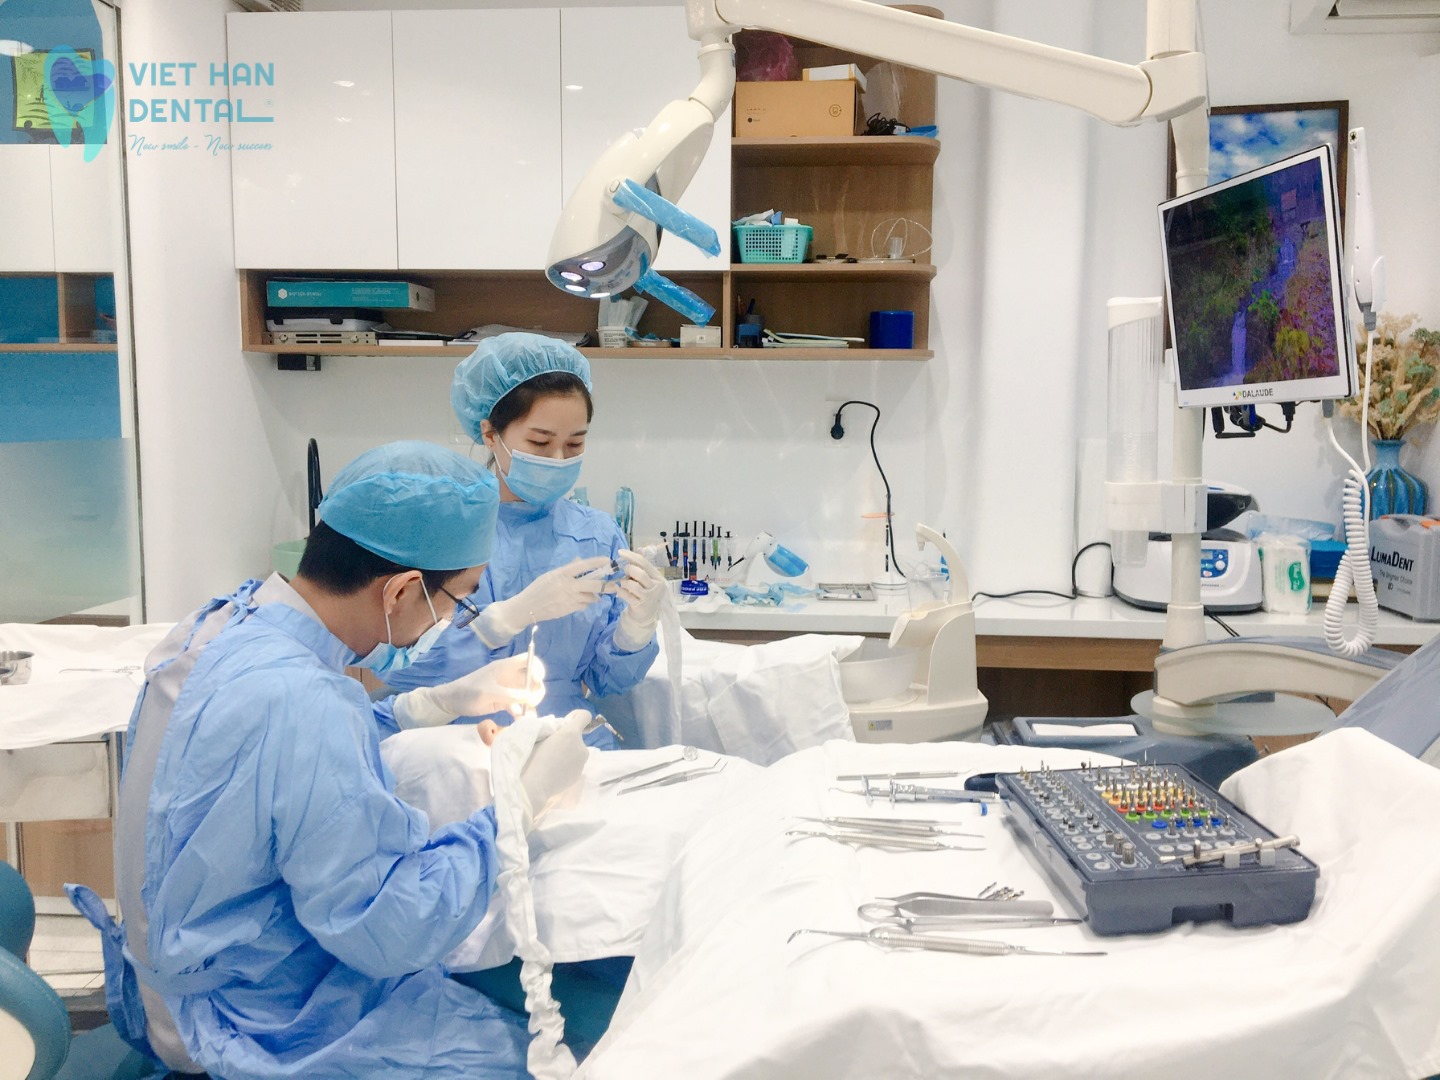 Bác sĩ đang tiến hành trồng răng Implant cho khách hàng tại Nha khoa Việt Hàn 